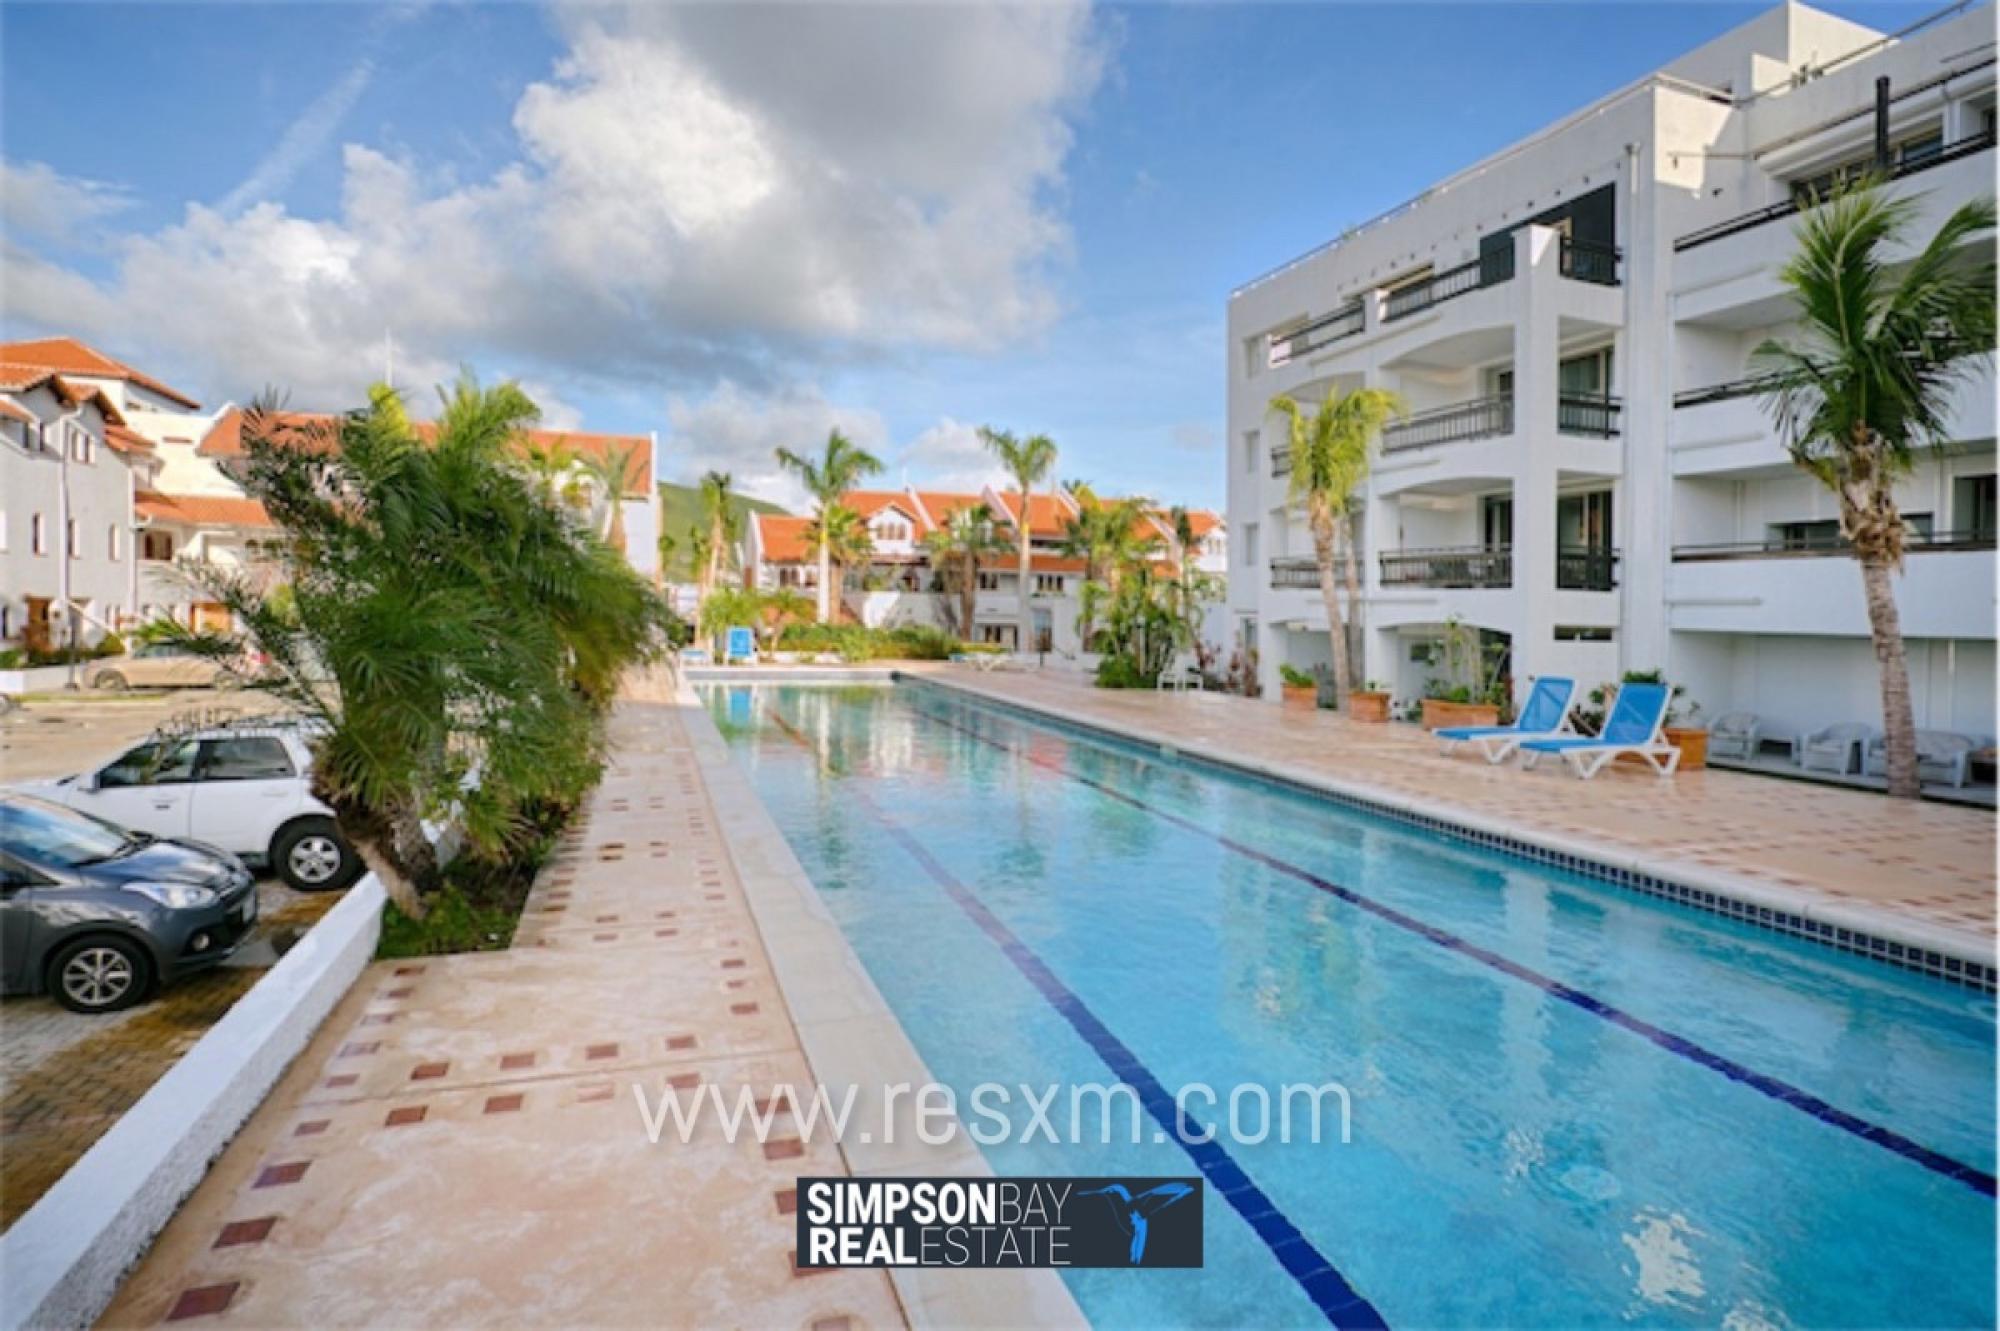 Picture of Apartment For Sale in Simpson Bay, Sint Maarten, Sint Maarten